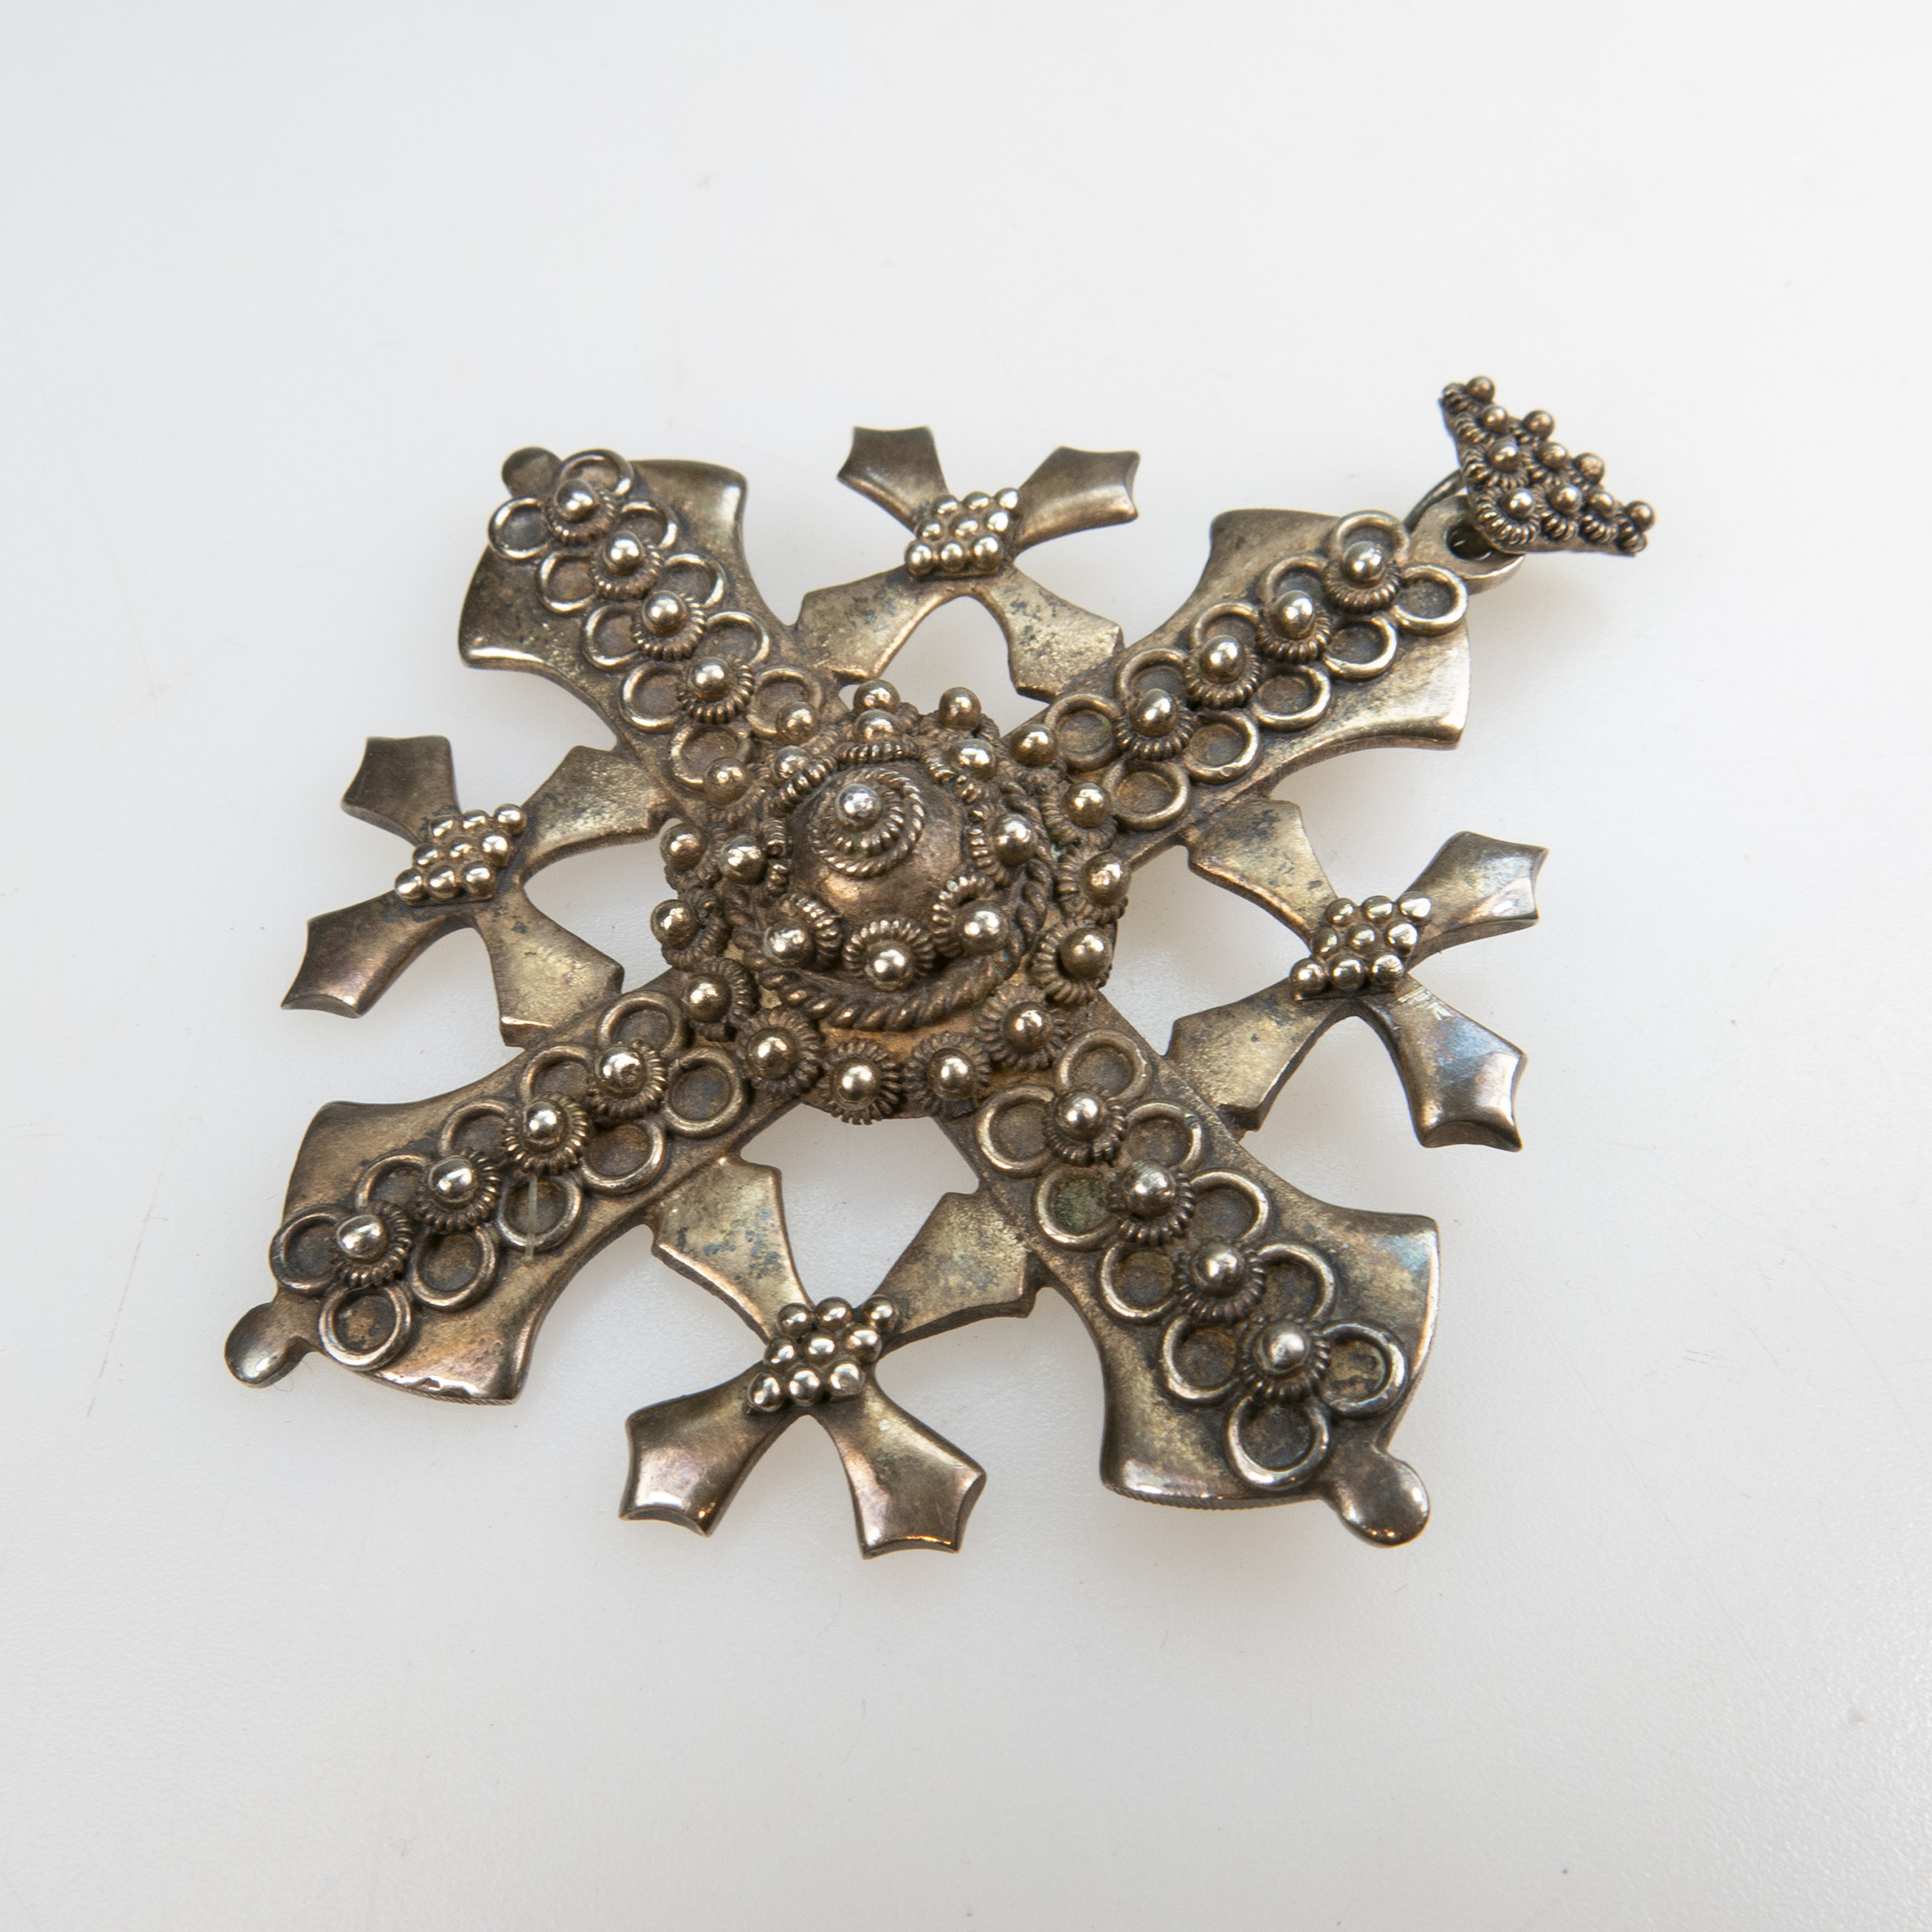 Jerusalem 900 Grade Silver Filigree Cross Pendant/Brooch